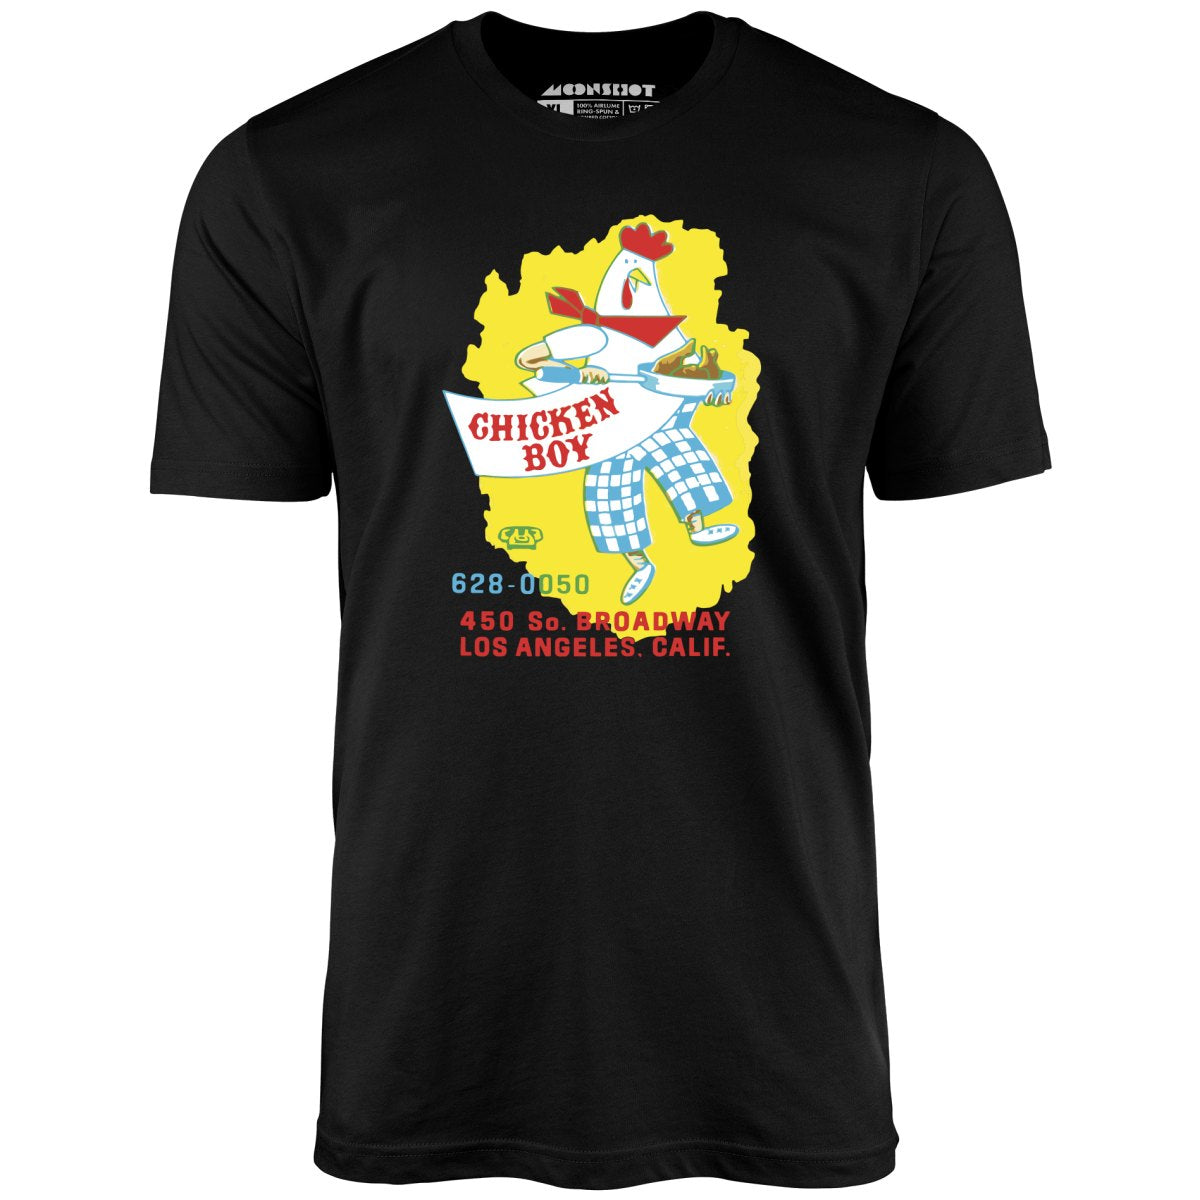 Chicken Boy - Los Angeles, CA - Vintage Restaurant - Unisex T-Shirt